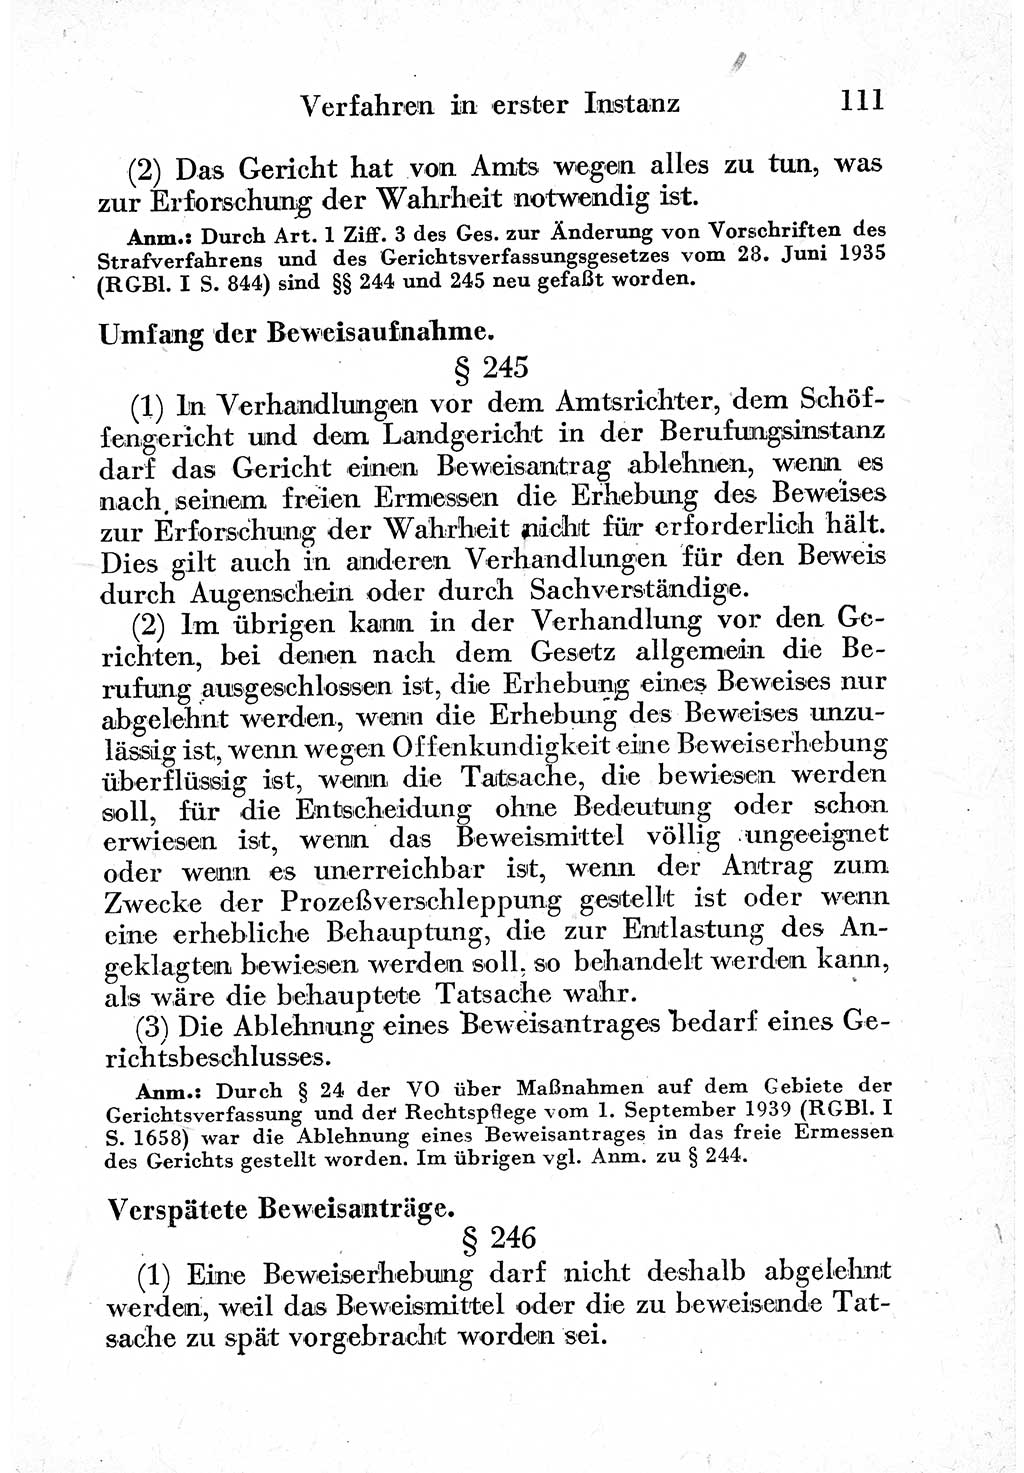 Strafprozeßordnung (StPO), Gerichtsverfassungsgesetz (GVG) und zahlreiche Nebengesetze der sowjetischen Besatzungszone (SBZ) in Deutschland 1949, Seite 111 (StPO GVG Ges. SBZ Dtl. 1949, S. 111)